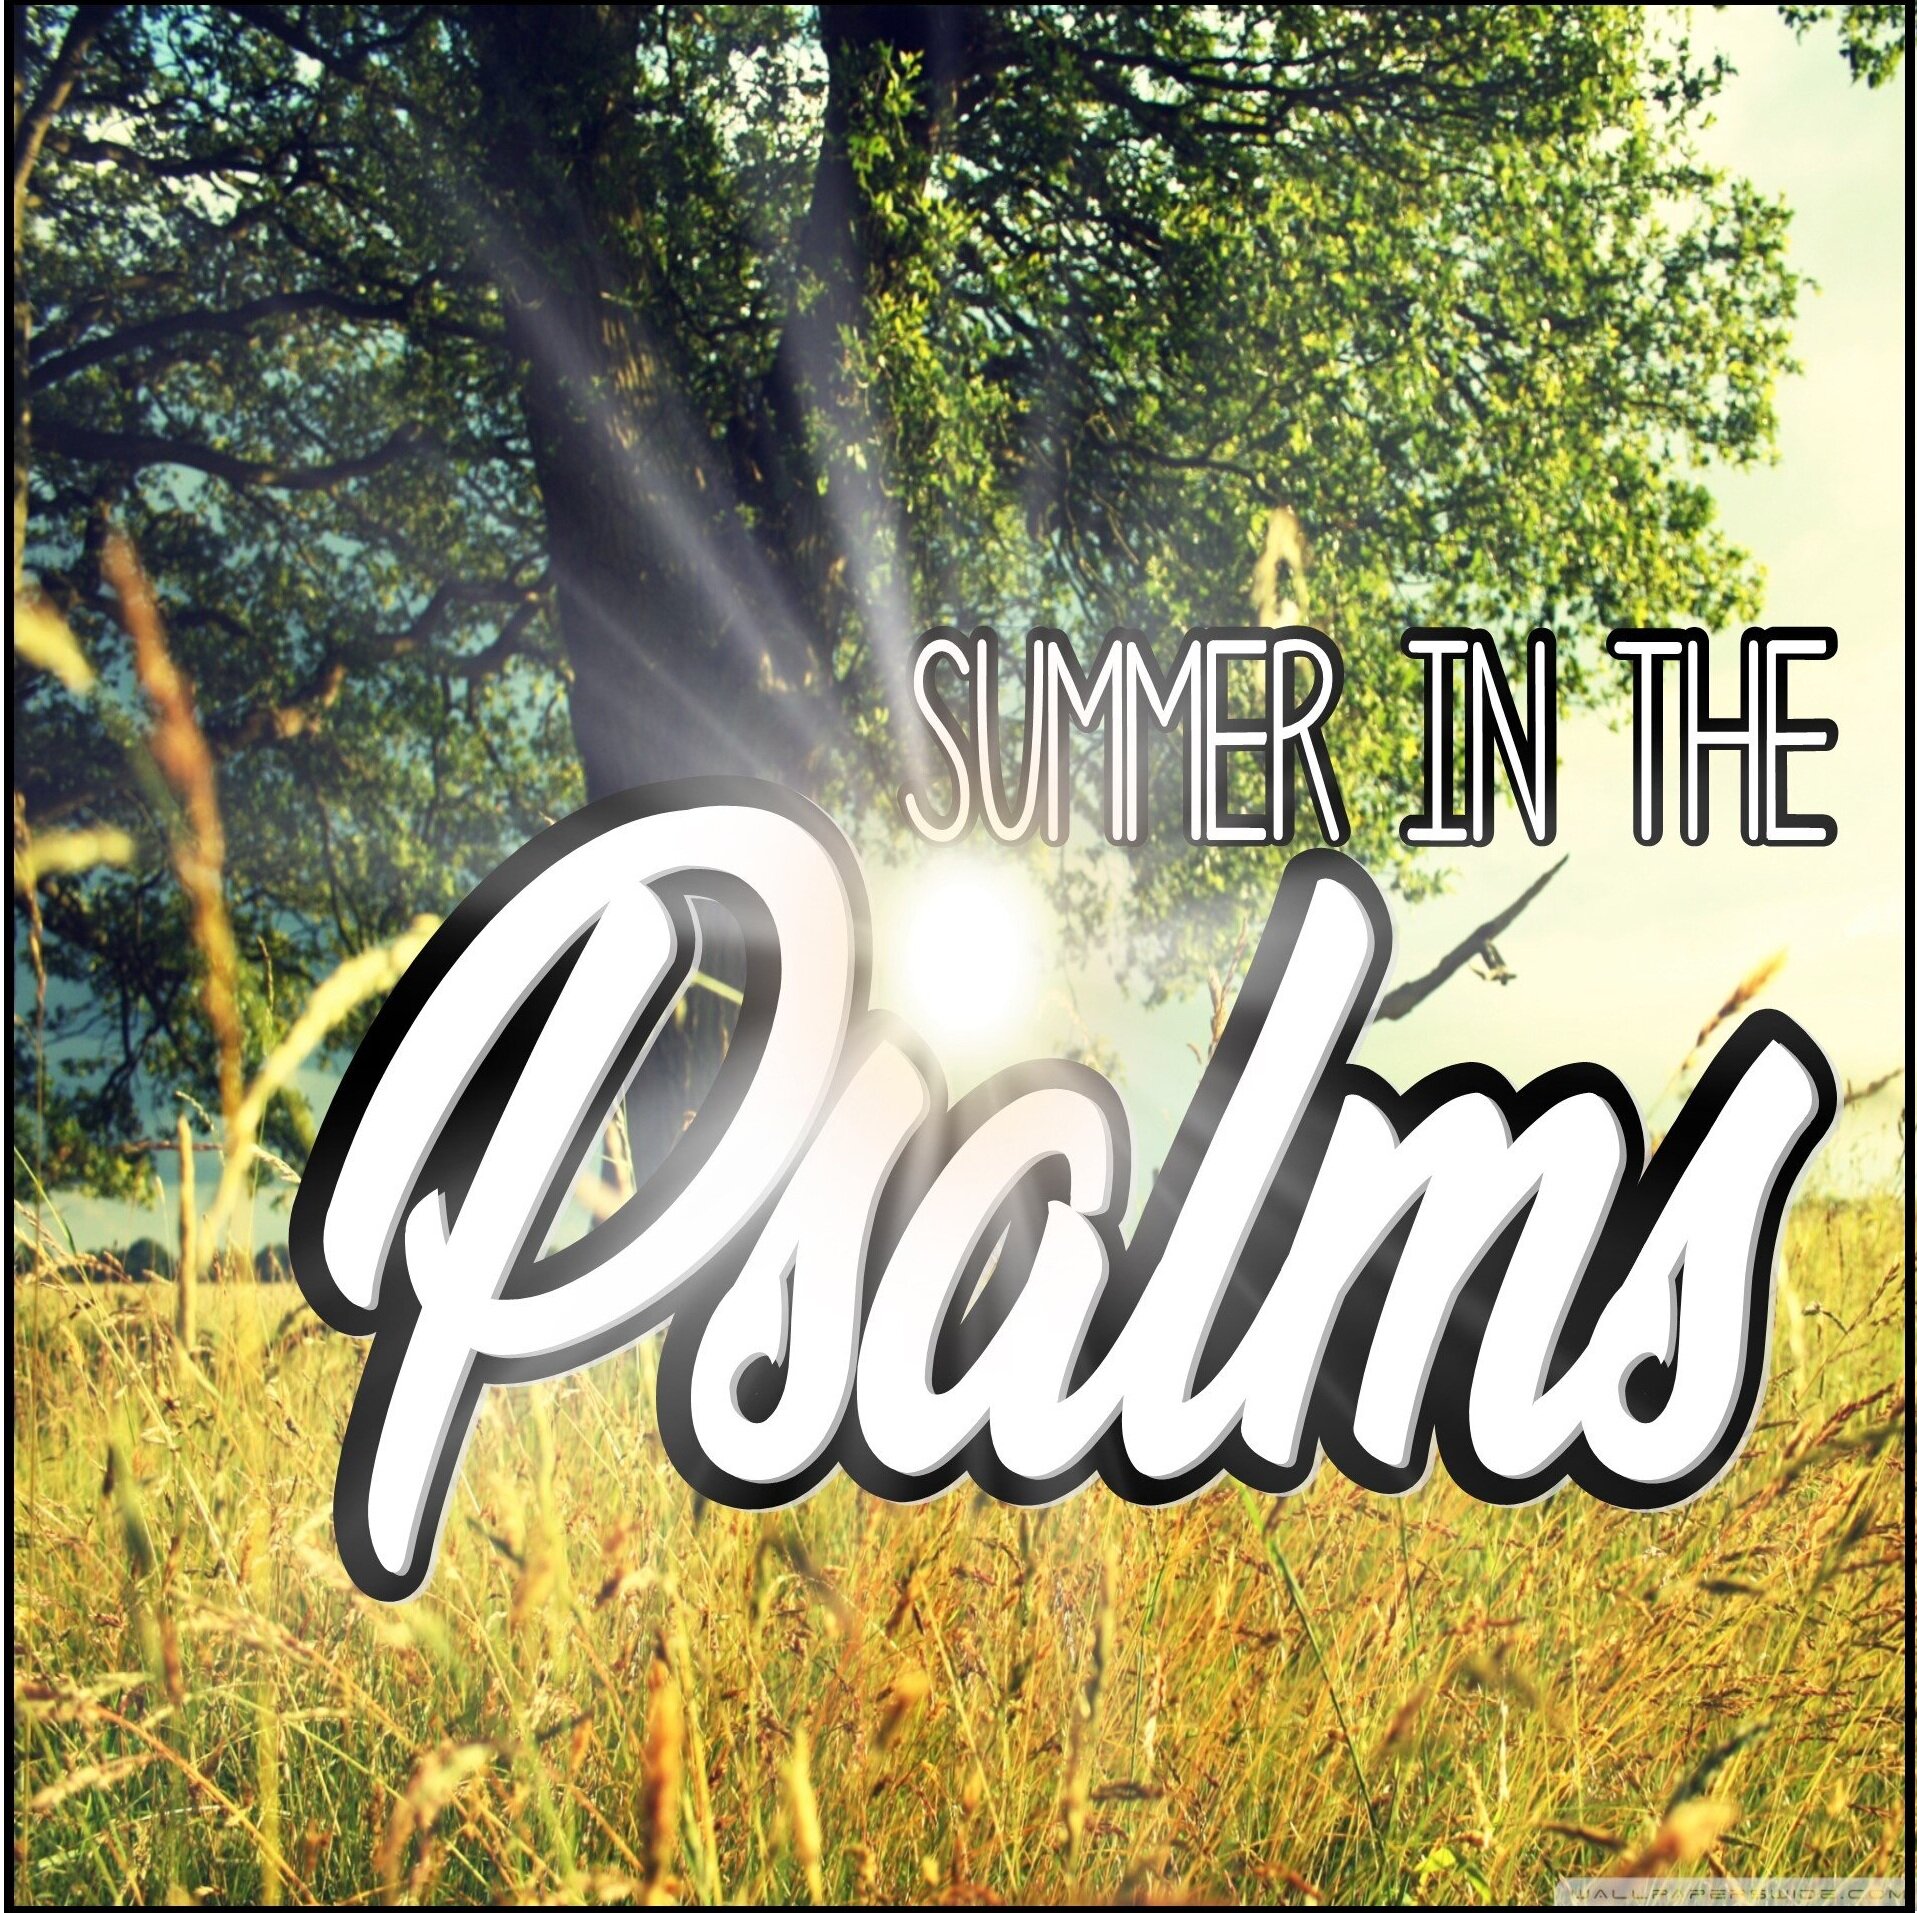 Summer In The Psalms.jpg